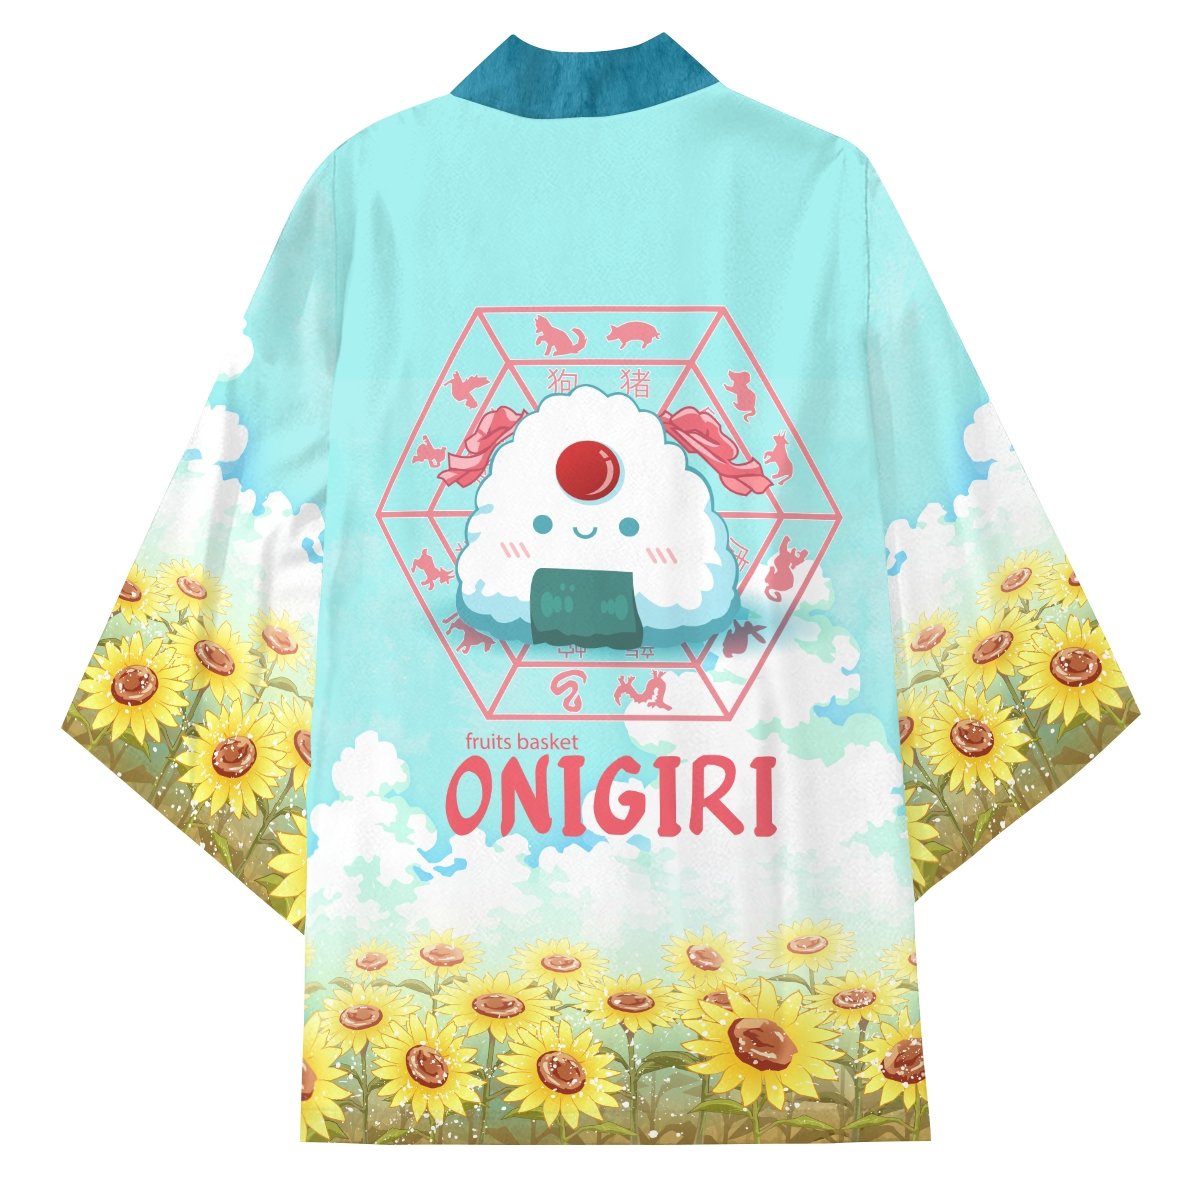 tohru the onigiri kimono 695926 - Otaku Treat